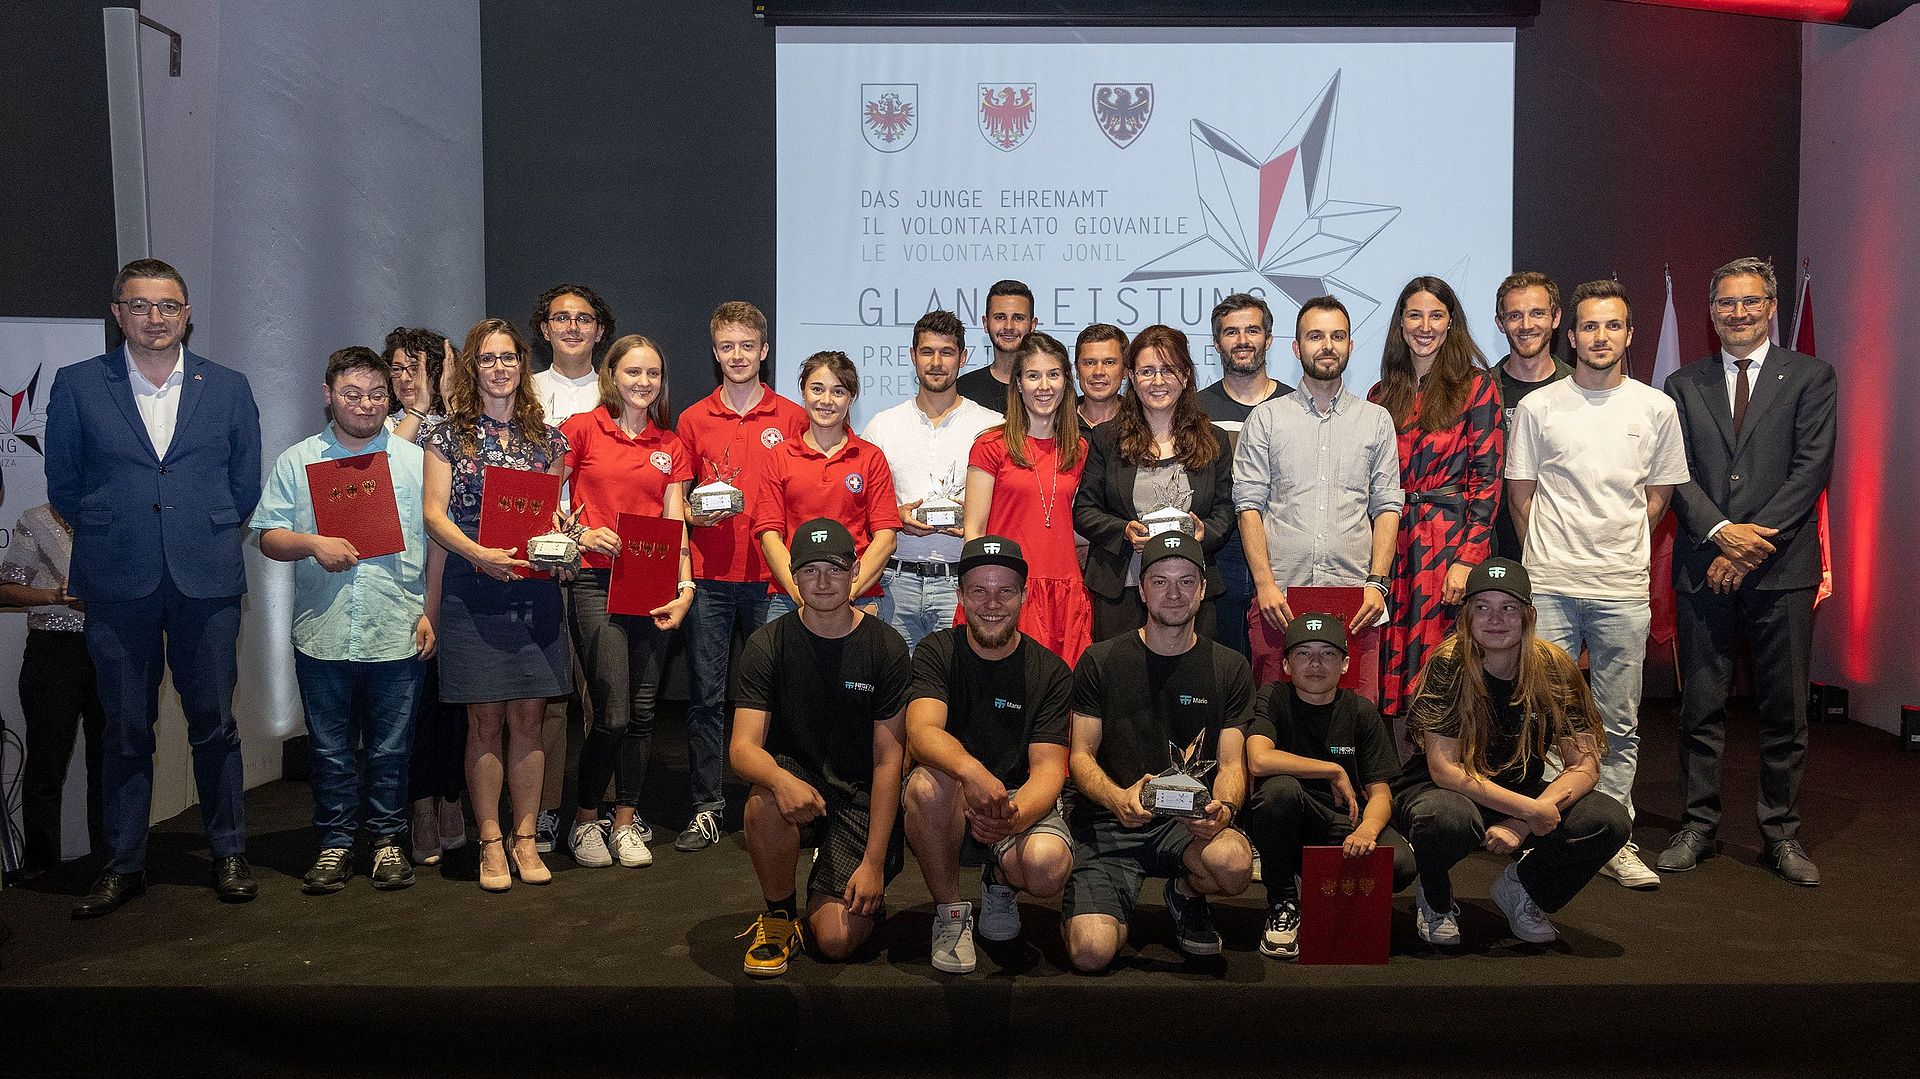 Die Jugendlichen, die heute für sechs herausragende Projekte mit der Auszeichnung "Glanzleistung - Das junge Ehrenamt" geehrt wurden